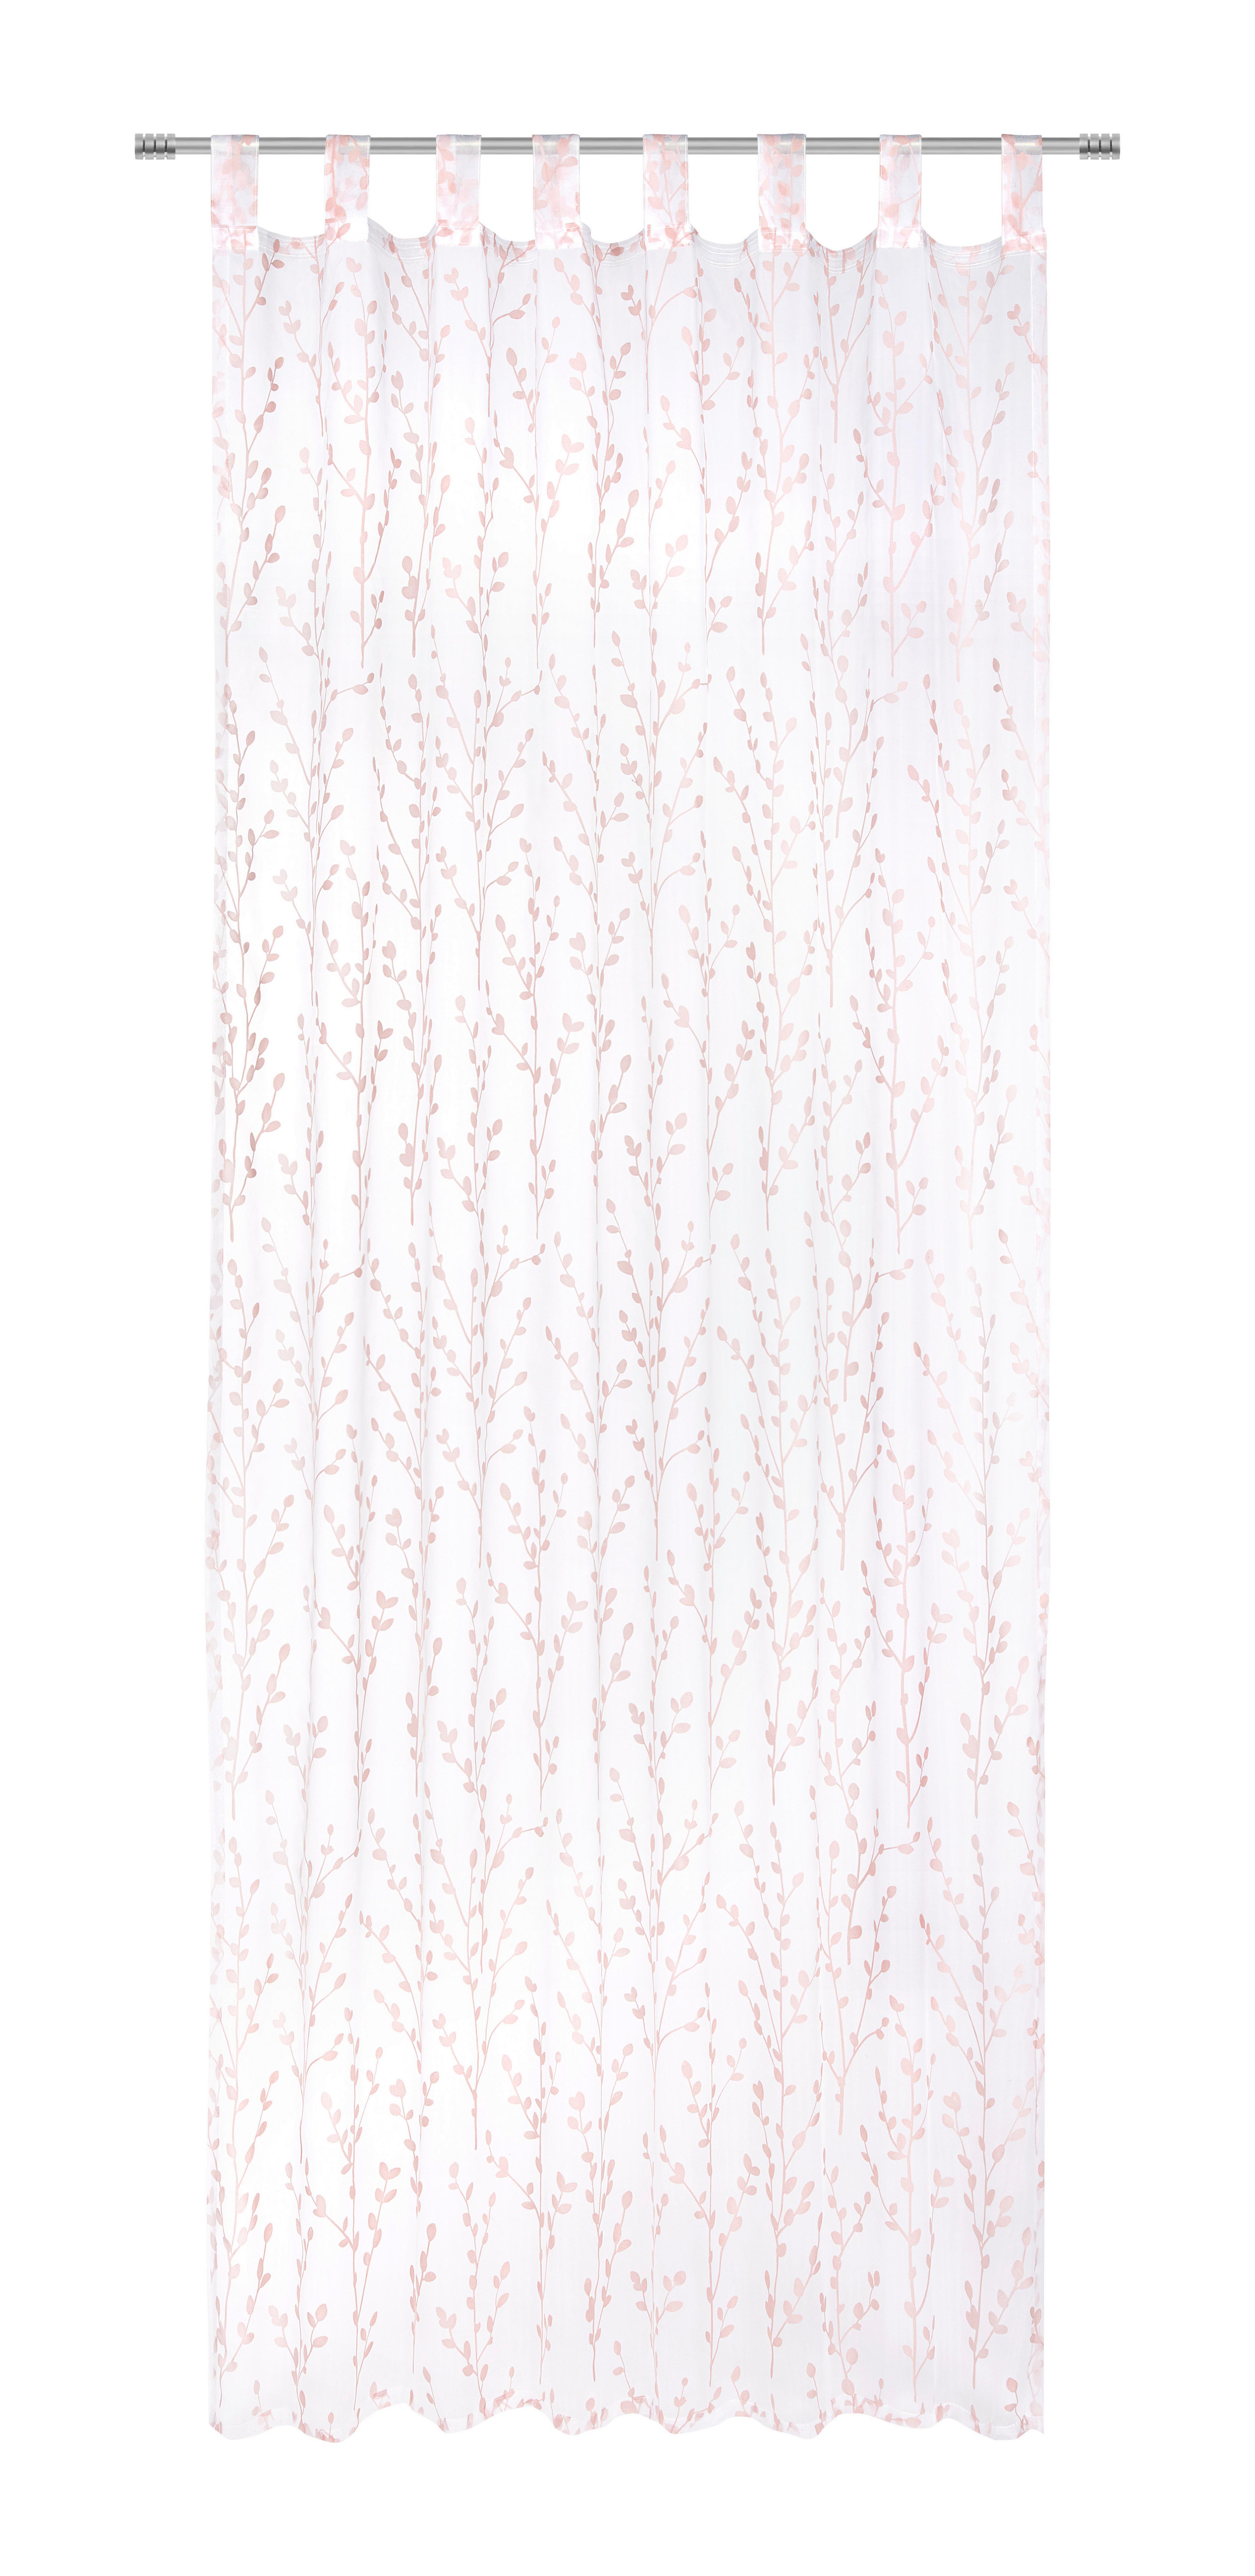 Závěs S Poutky Christiane, 140/250cm, Růžová - starorůžová, Konvenční, textil (140/250cm) - Modern Living